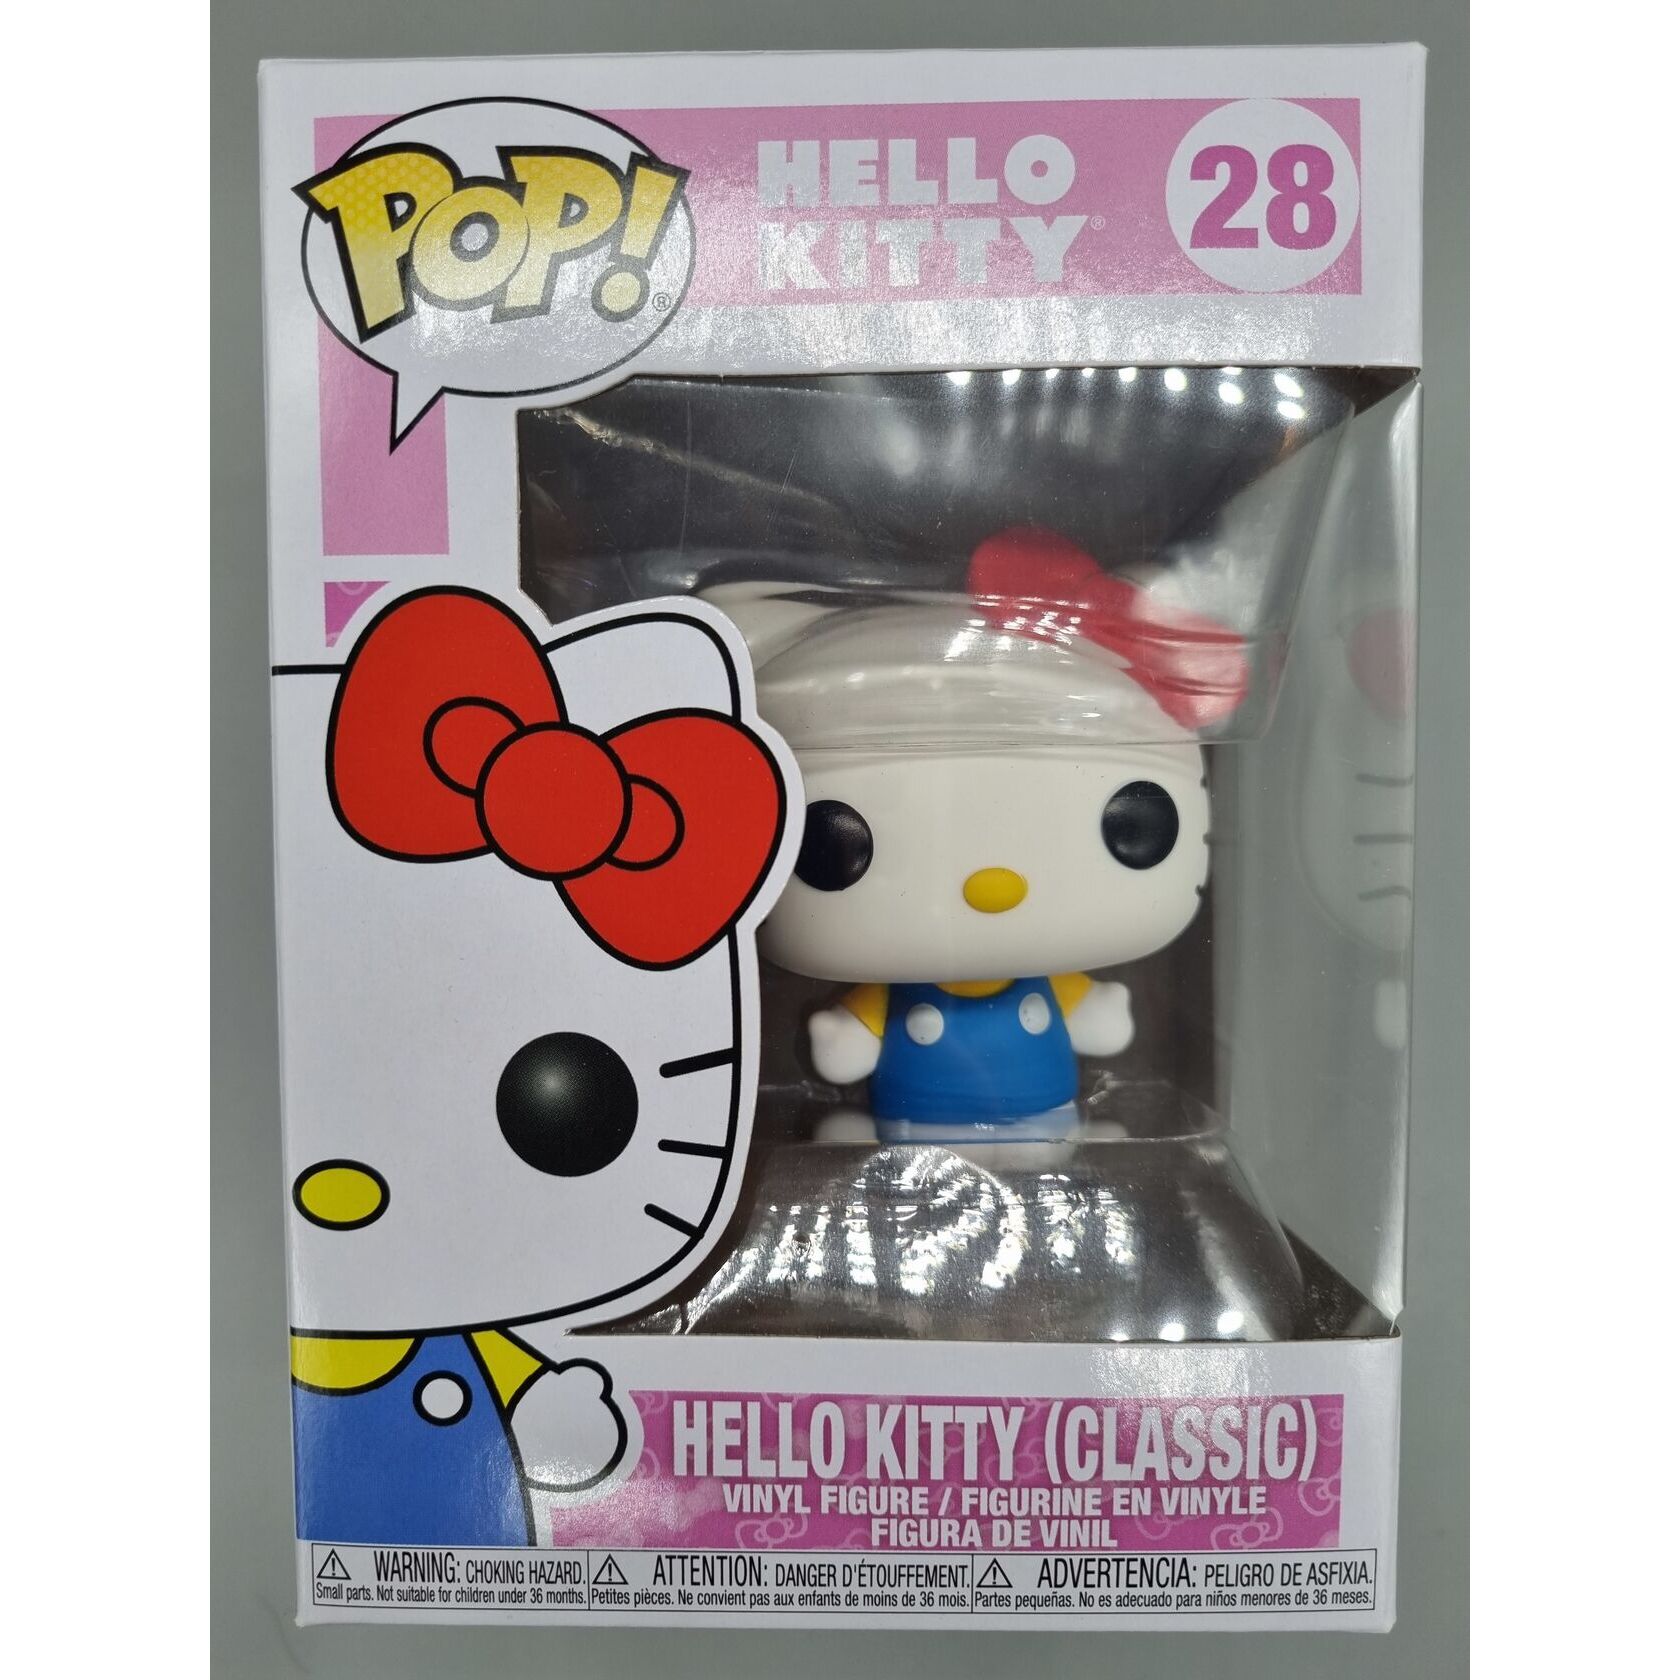 28 Hello Kitty (Classic) - Sanrio – Funko Pops